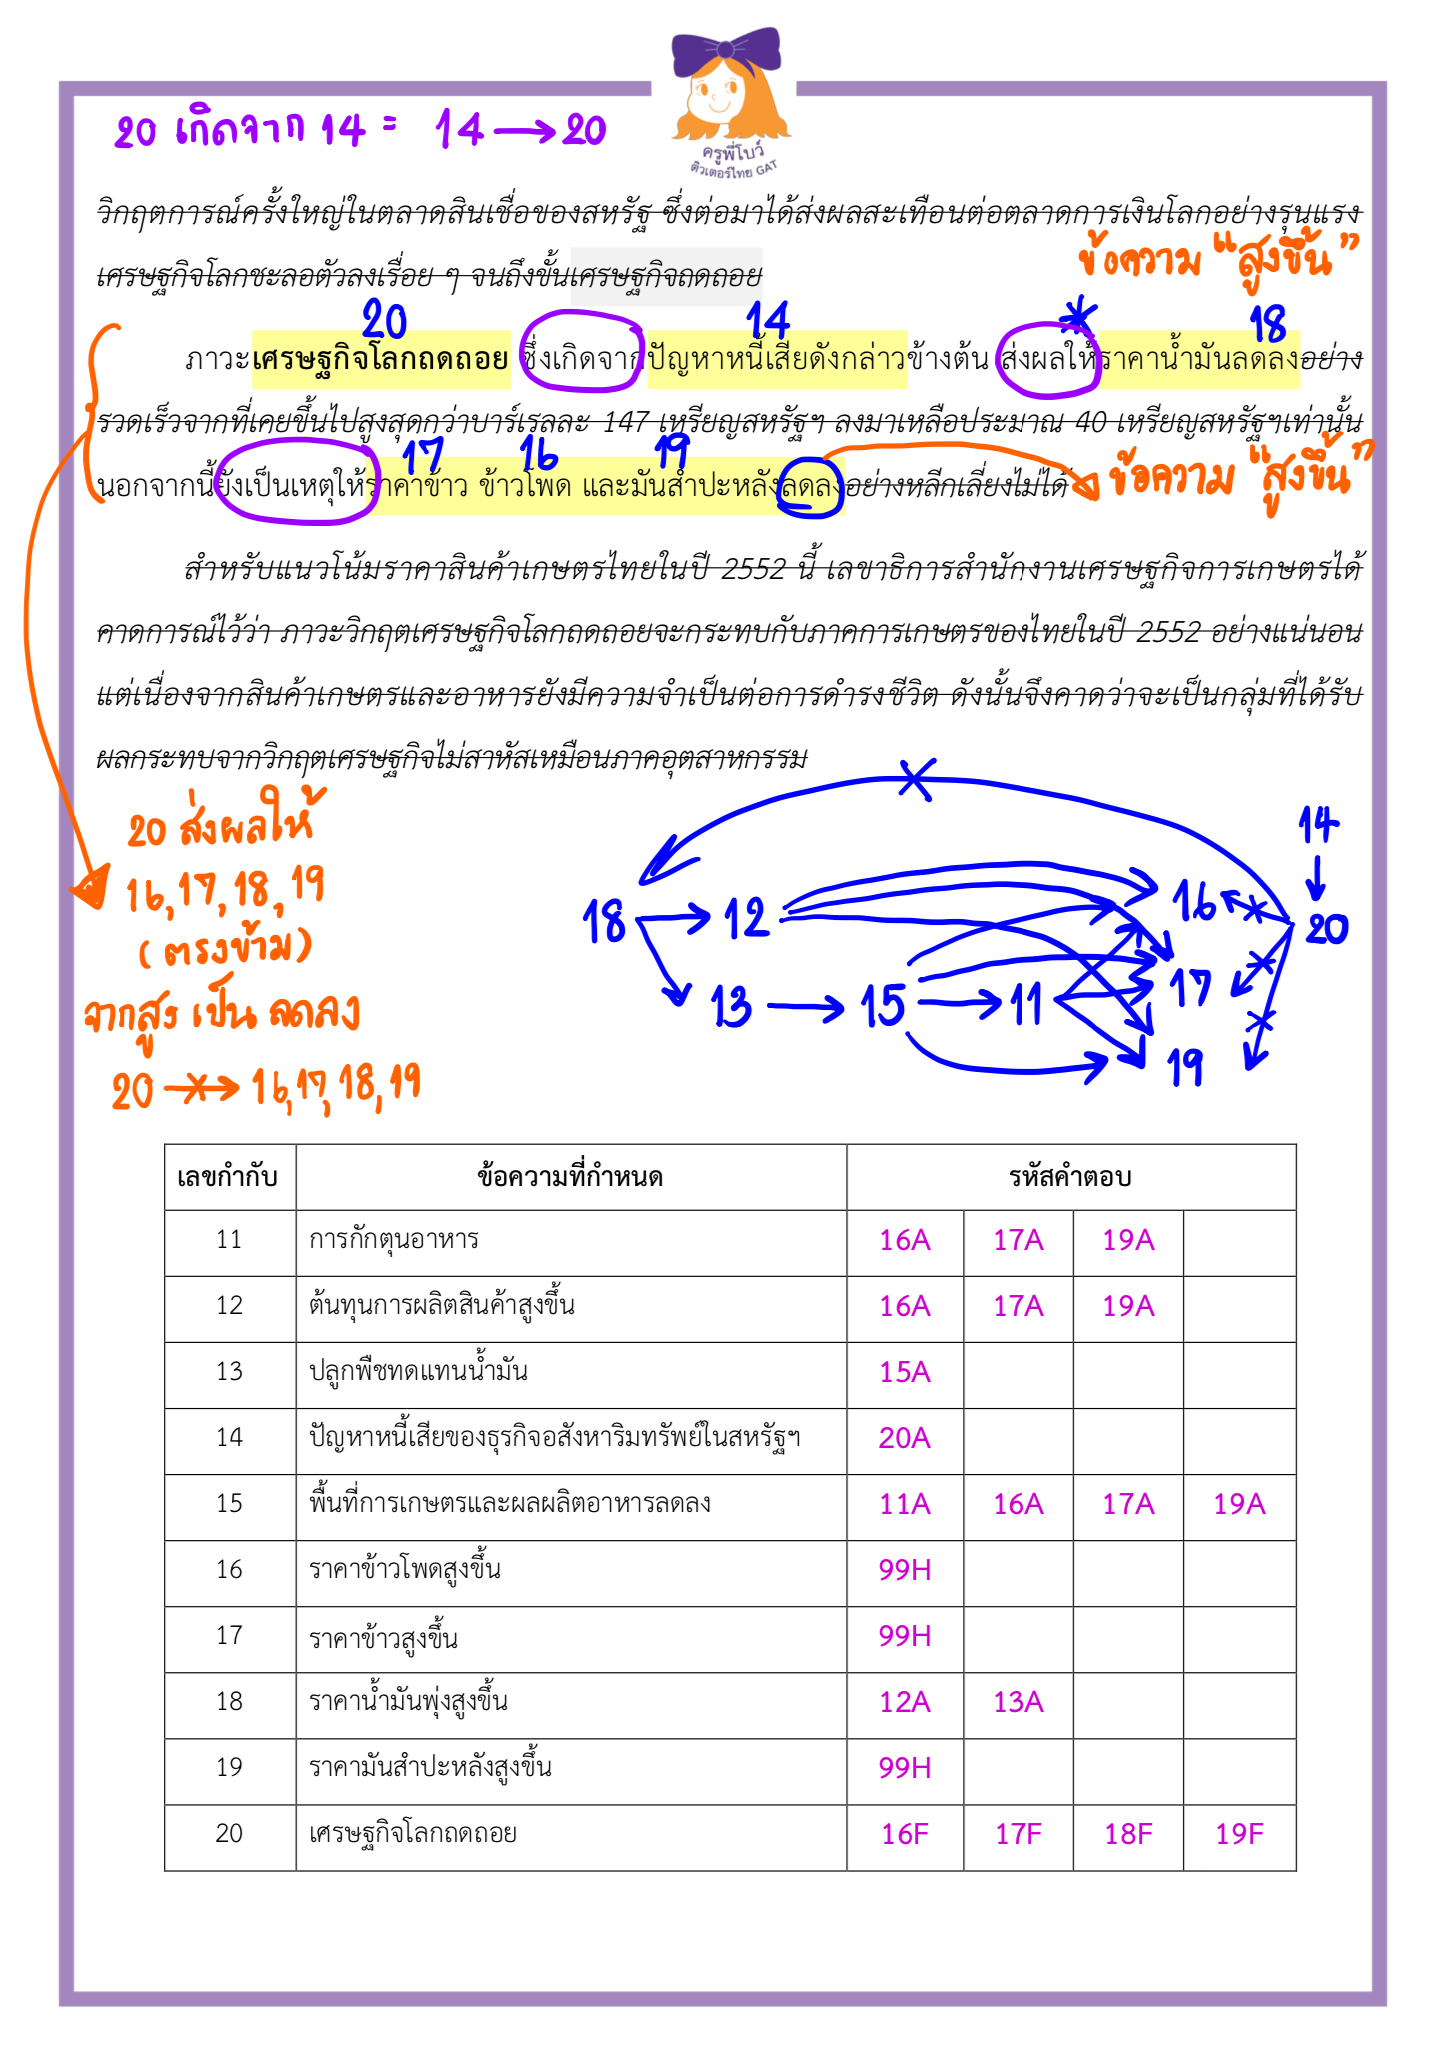 ข้อสอบจริง วิชาภาษาไทย